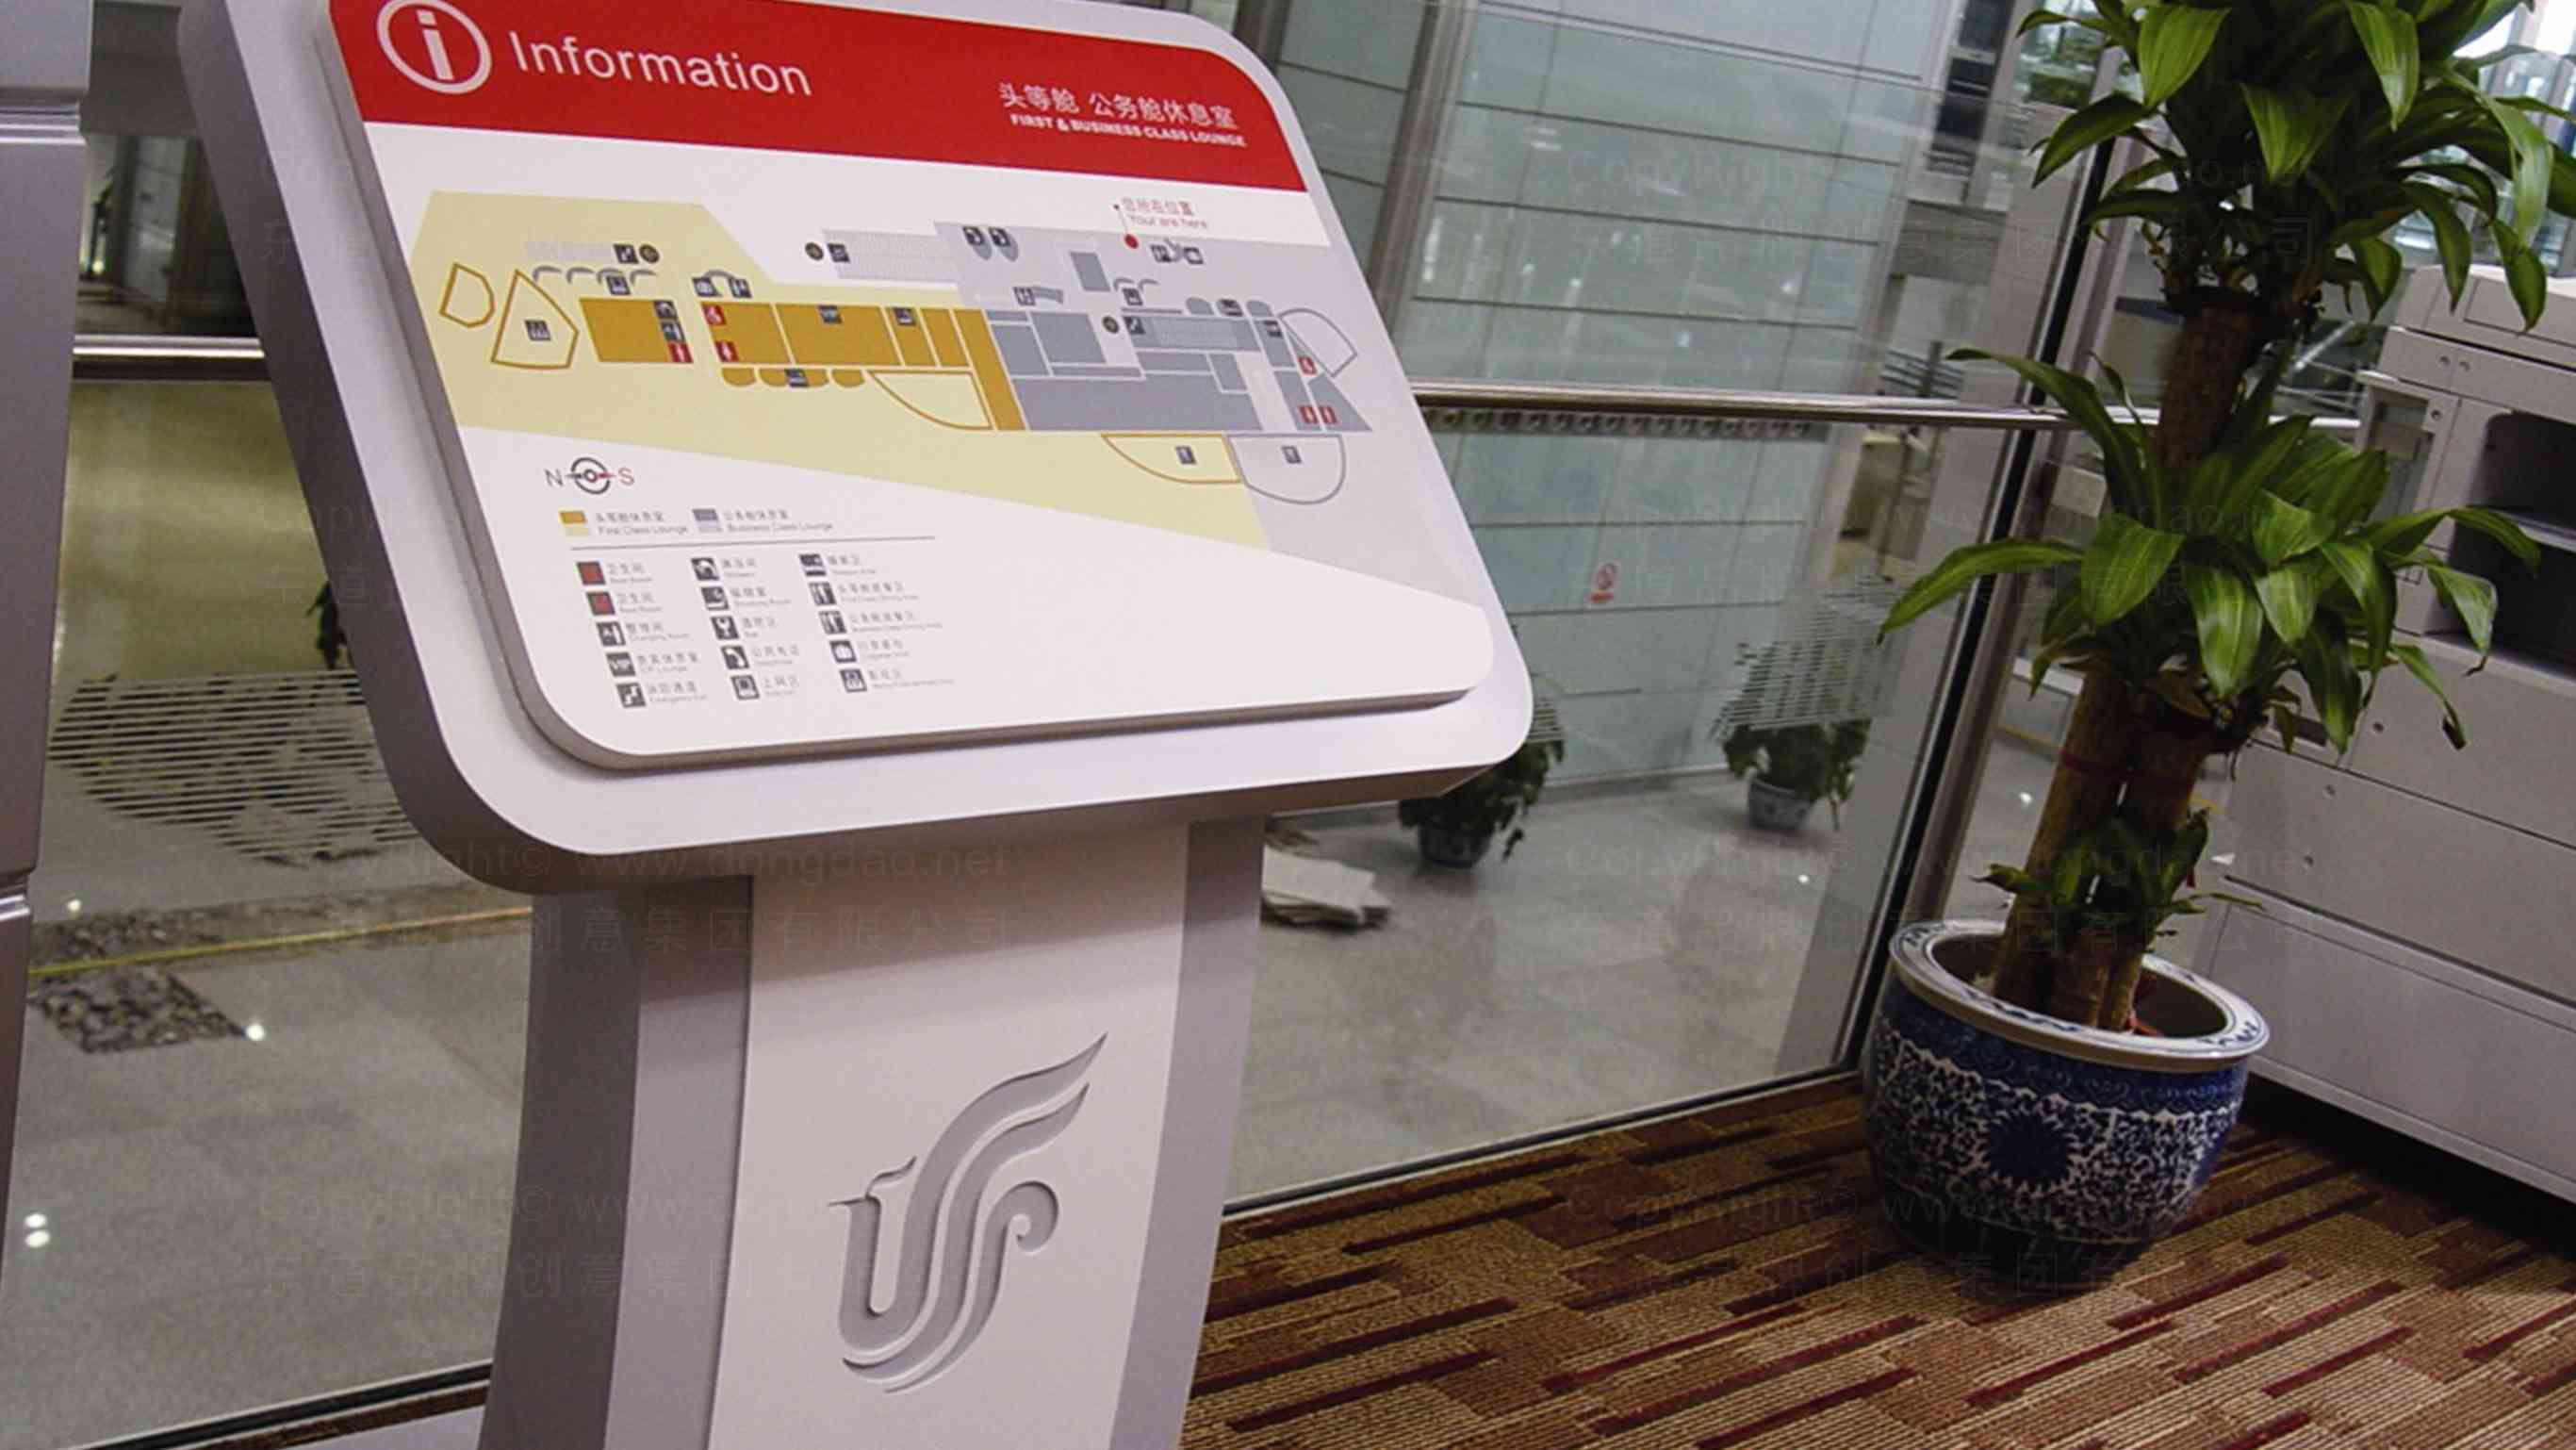 中国国航T3航站楼航空公司标识工程设计图片素材